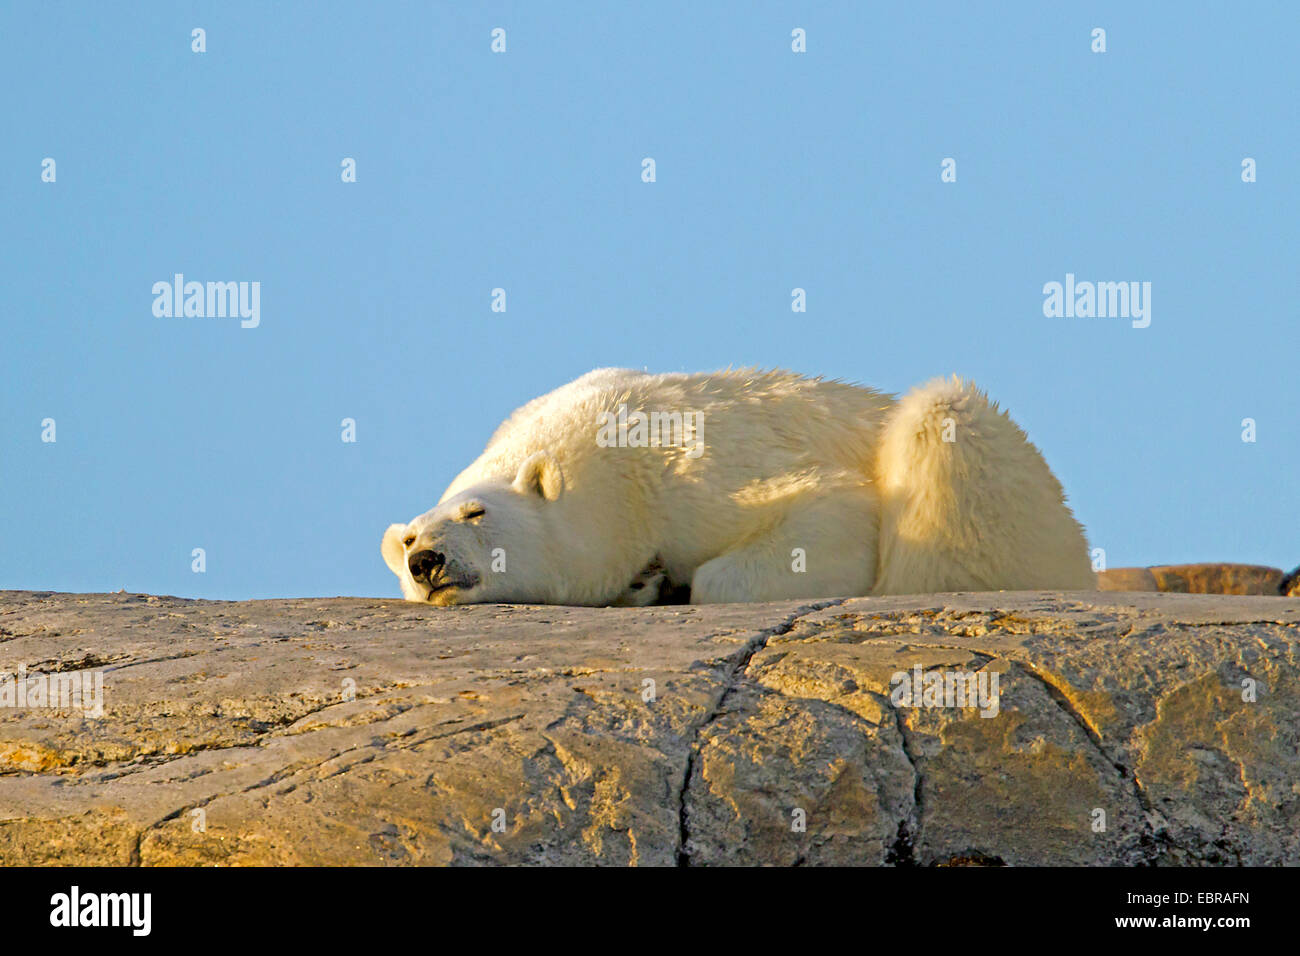 El oso polar (Ursus maritimus), se encuentra sobre una roca en el sol, Noruega, Svalbard Foto de stock